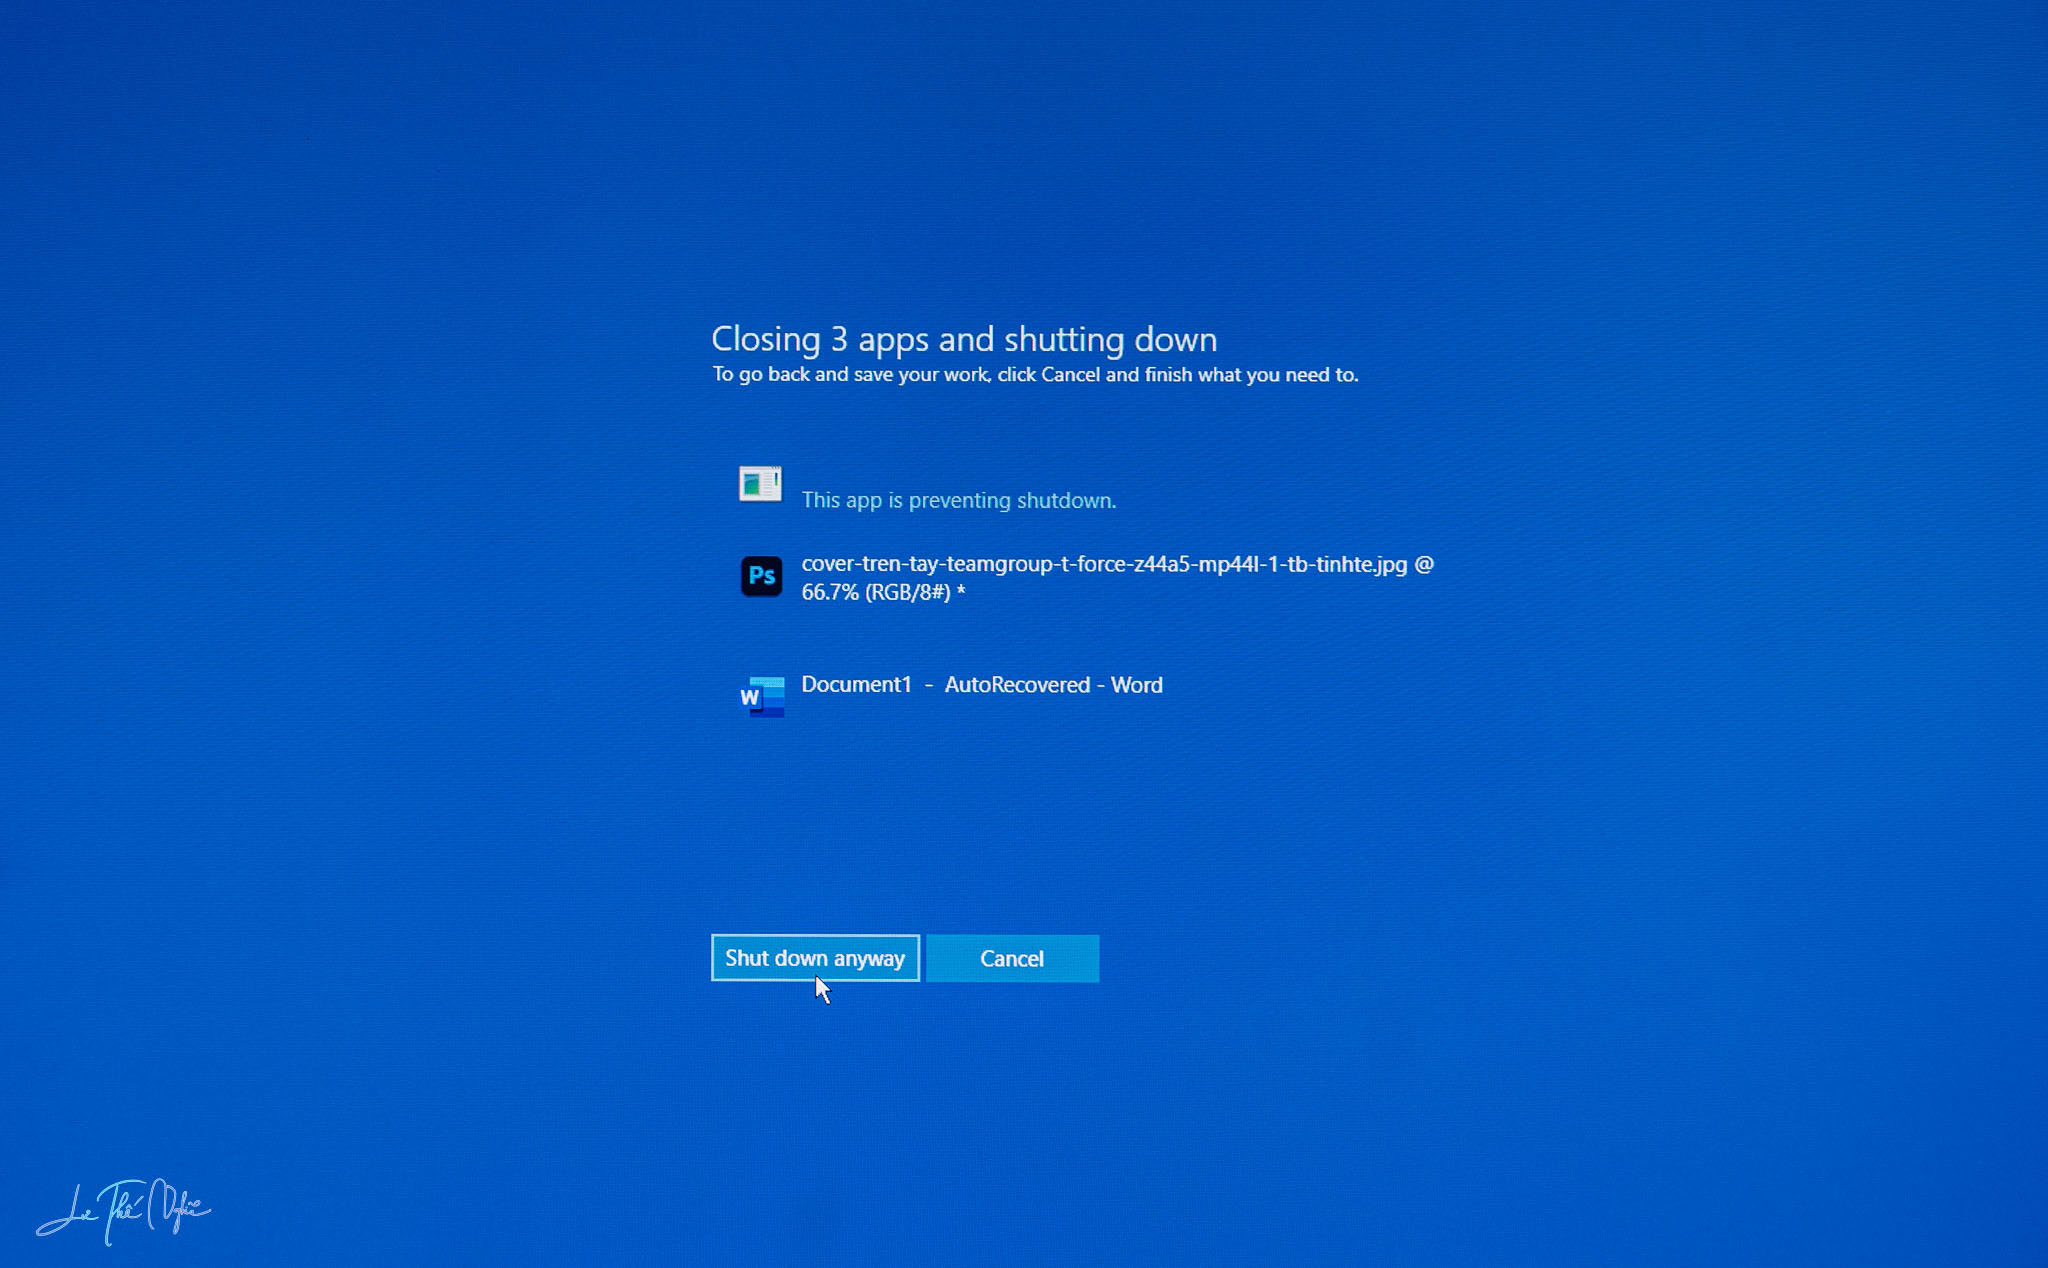 Cách tắt thông báo nhắc nhở “Shut down anyway” trong Windows